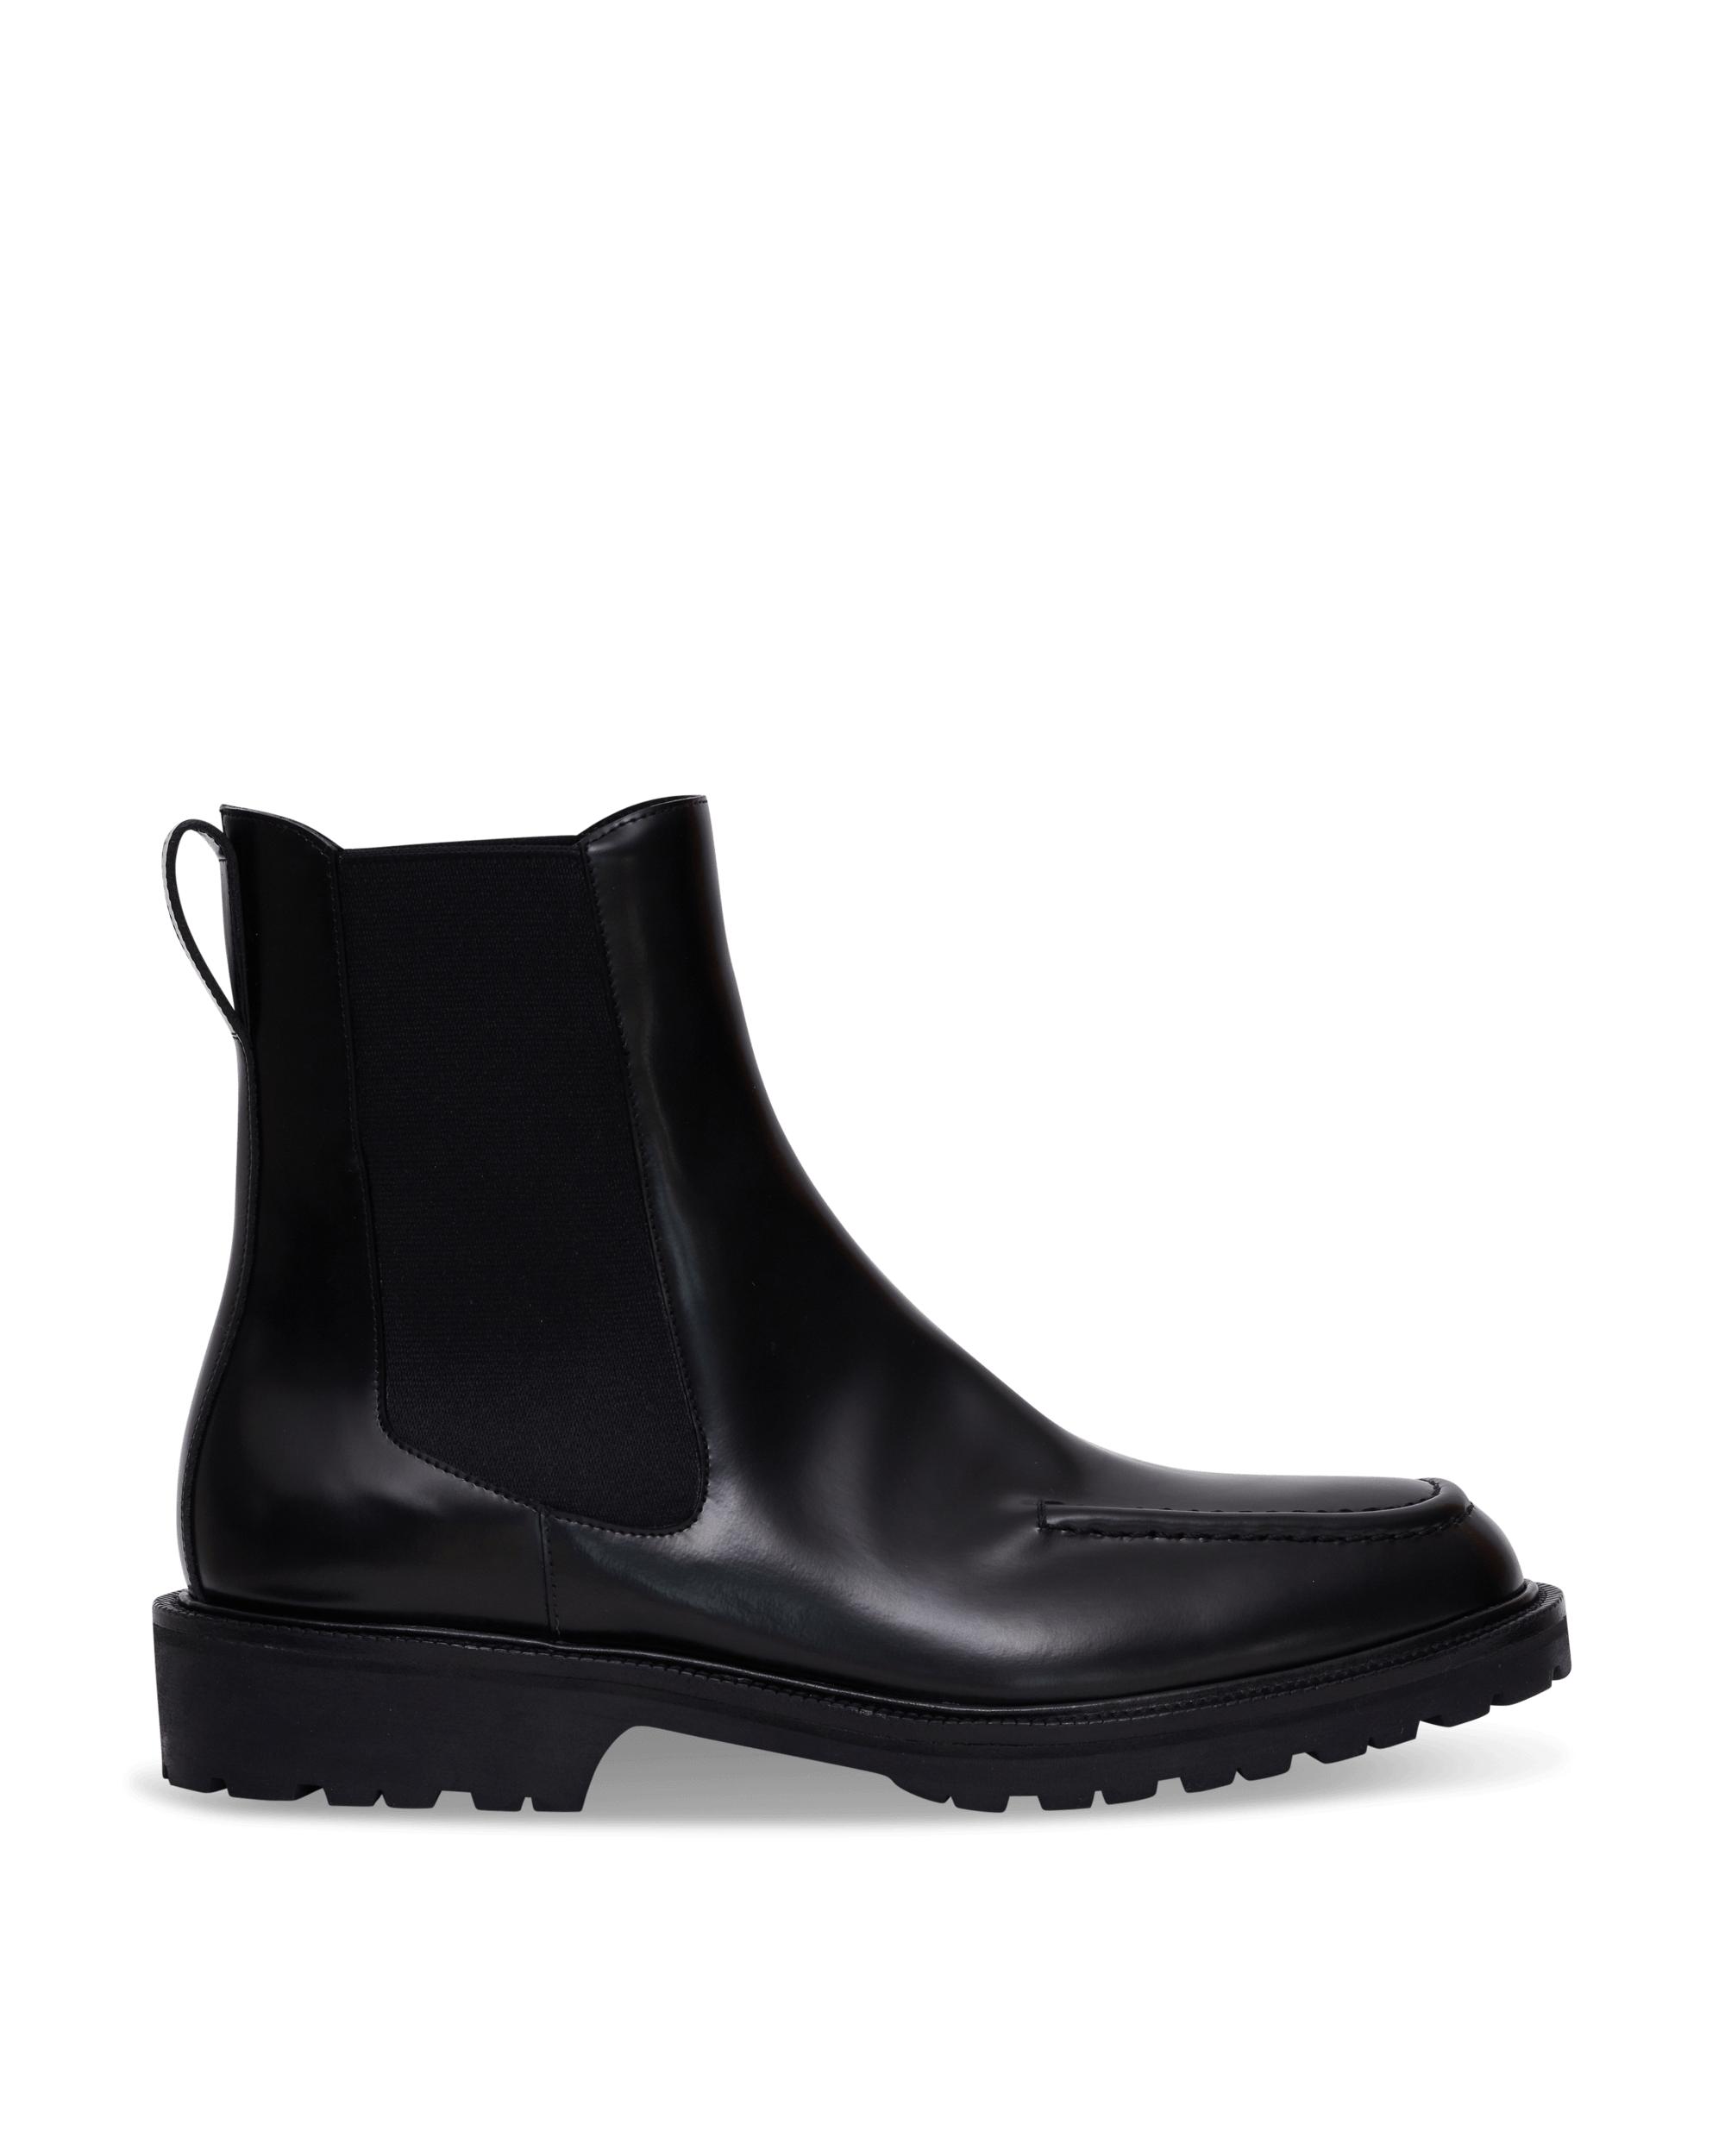 Dries Van Noten Leather Calf Skin Chelsea Boots in Black for Men - Lyst